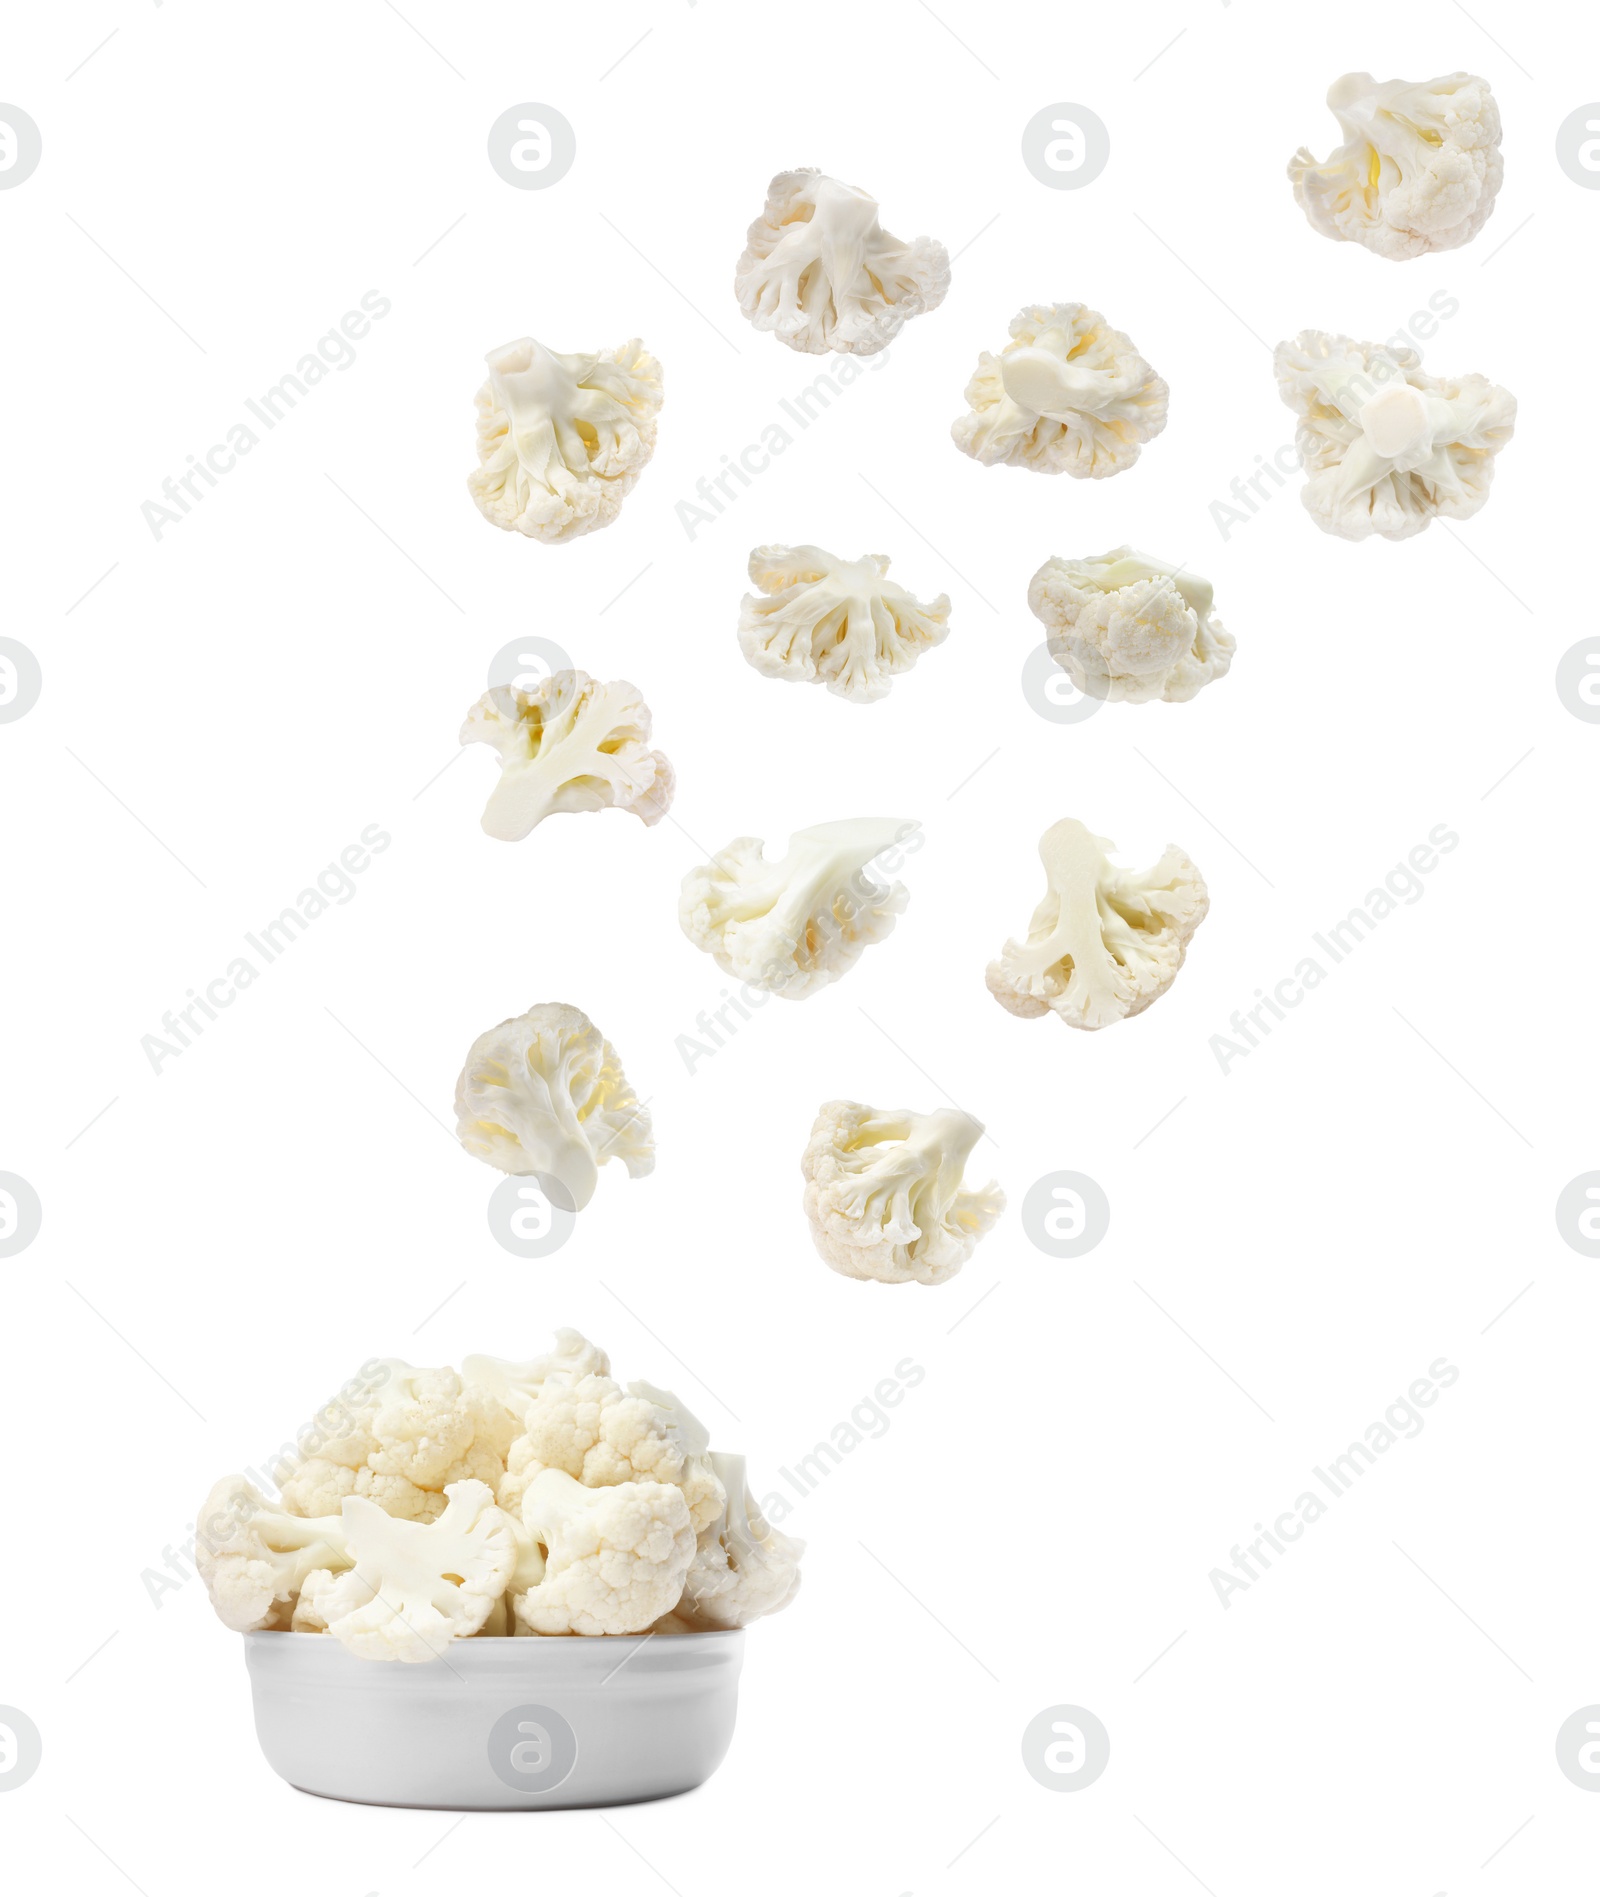 Image of Many fresh cauliflower florets falling into bowl on white background